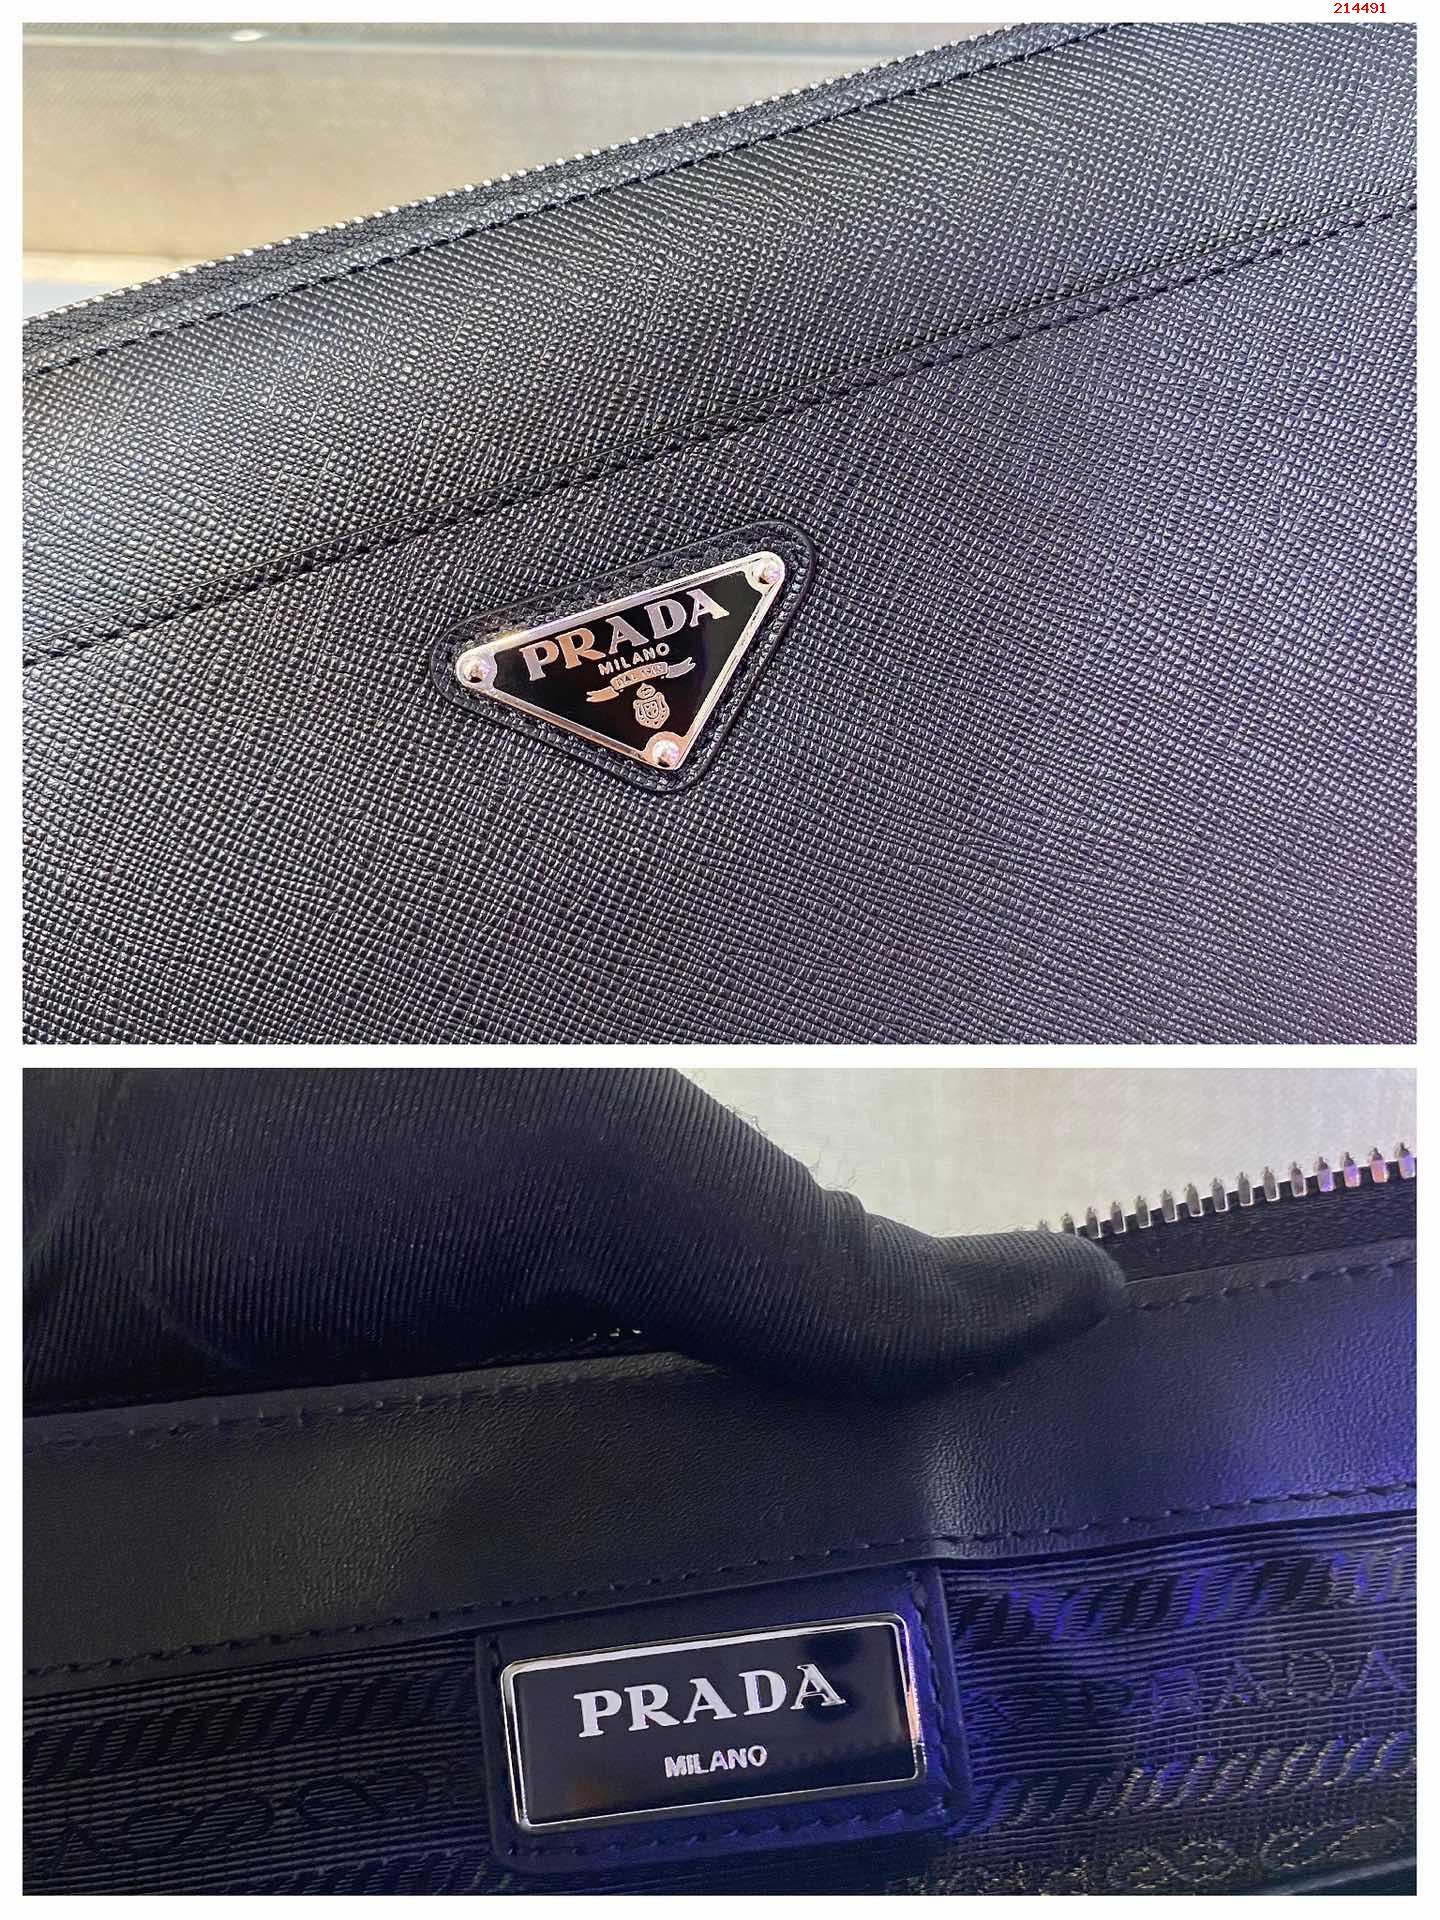 新しいハンドバッグ2 VF 032このスタイルのおしゃれな男性のハンドバッグには取り外し可能な革リストバンド三角形の金属ロゴが付